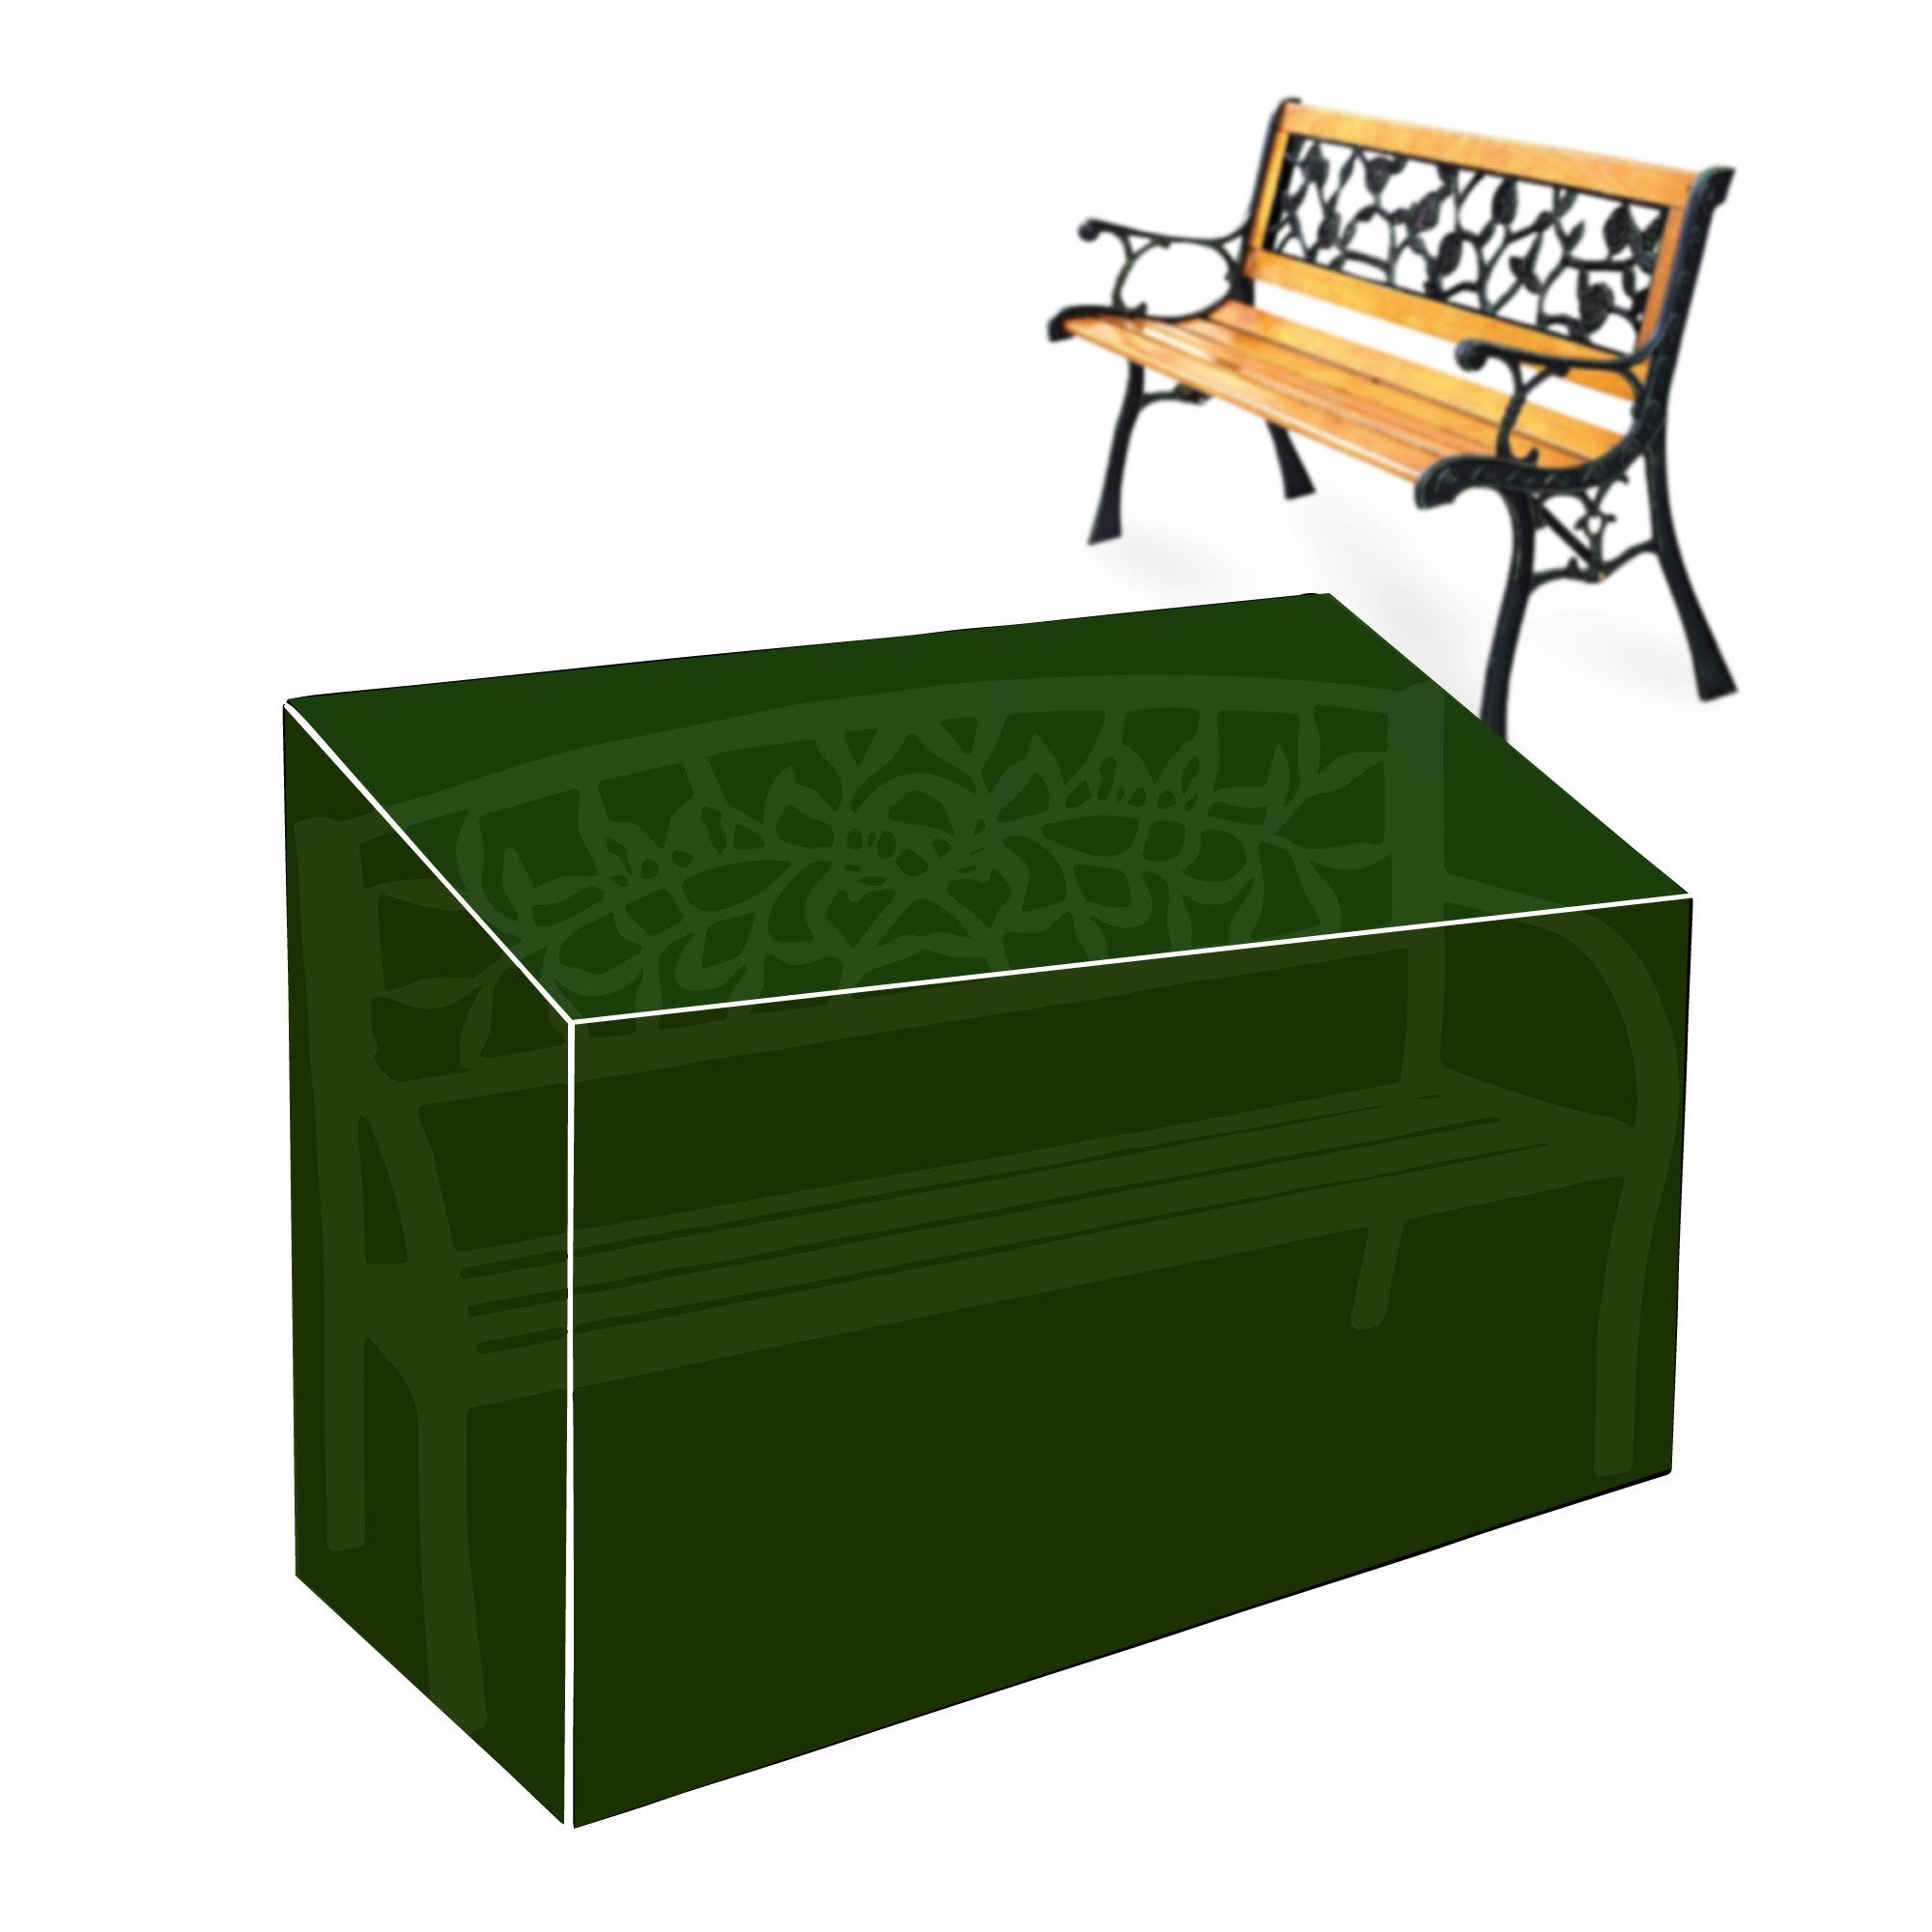 Silver & Stone Outdoor Furniture Cover for Garden Bench 163 x 66 x 89cm  | TJ Hughes Green